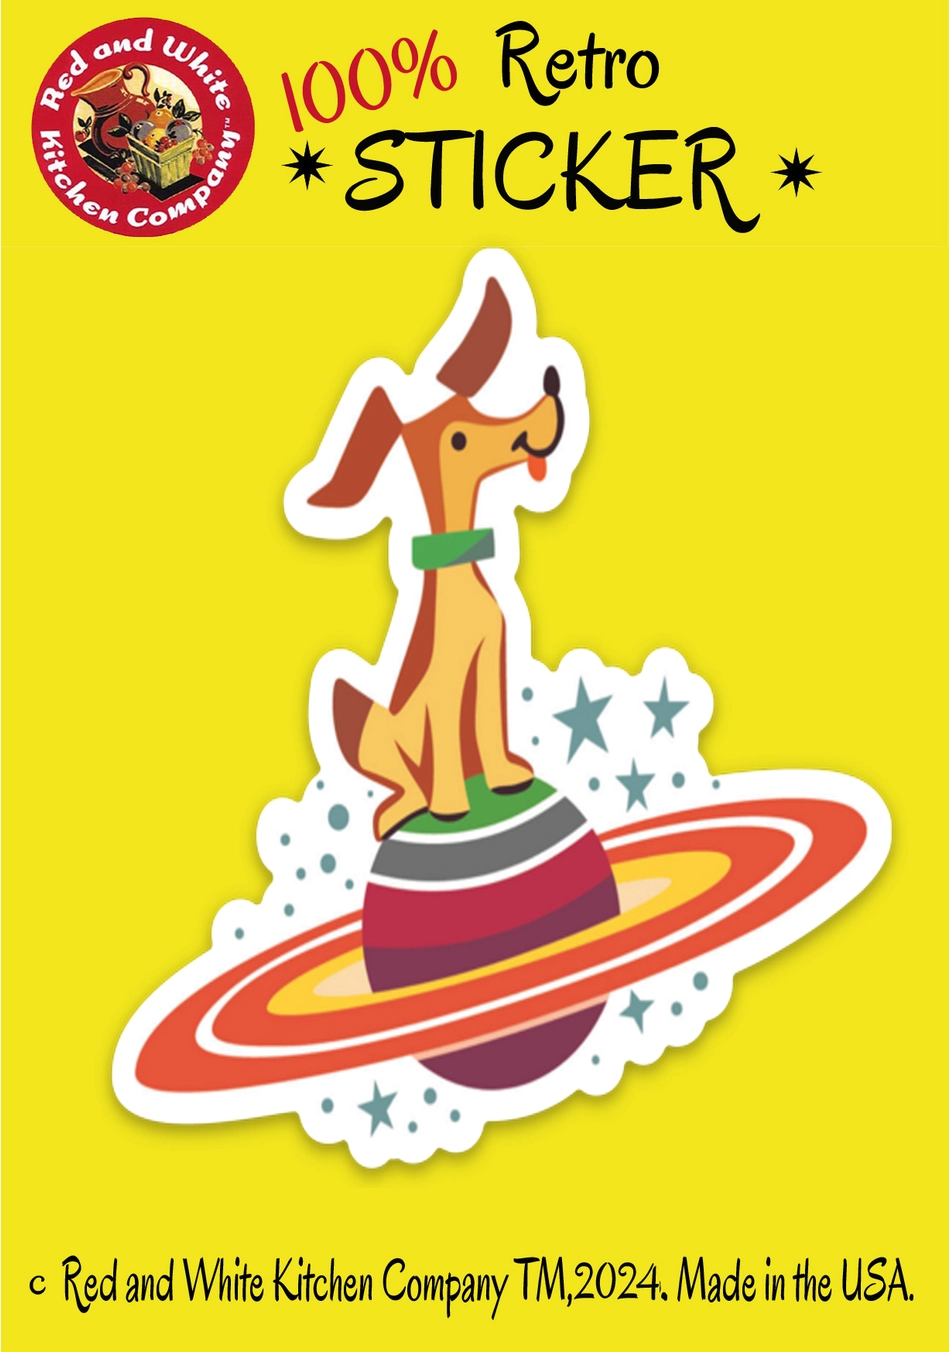 Space Dog Sticker